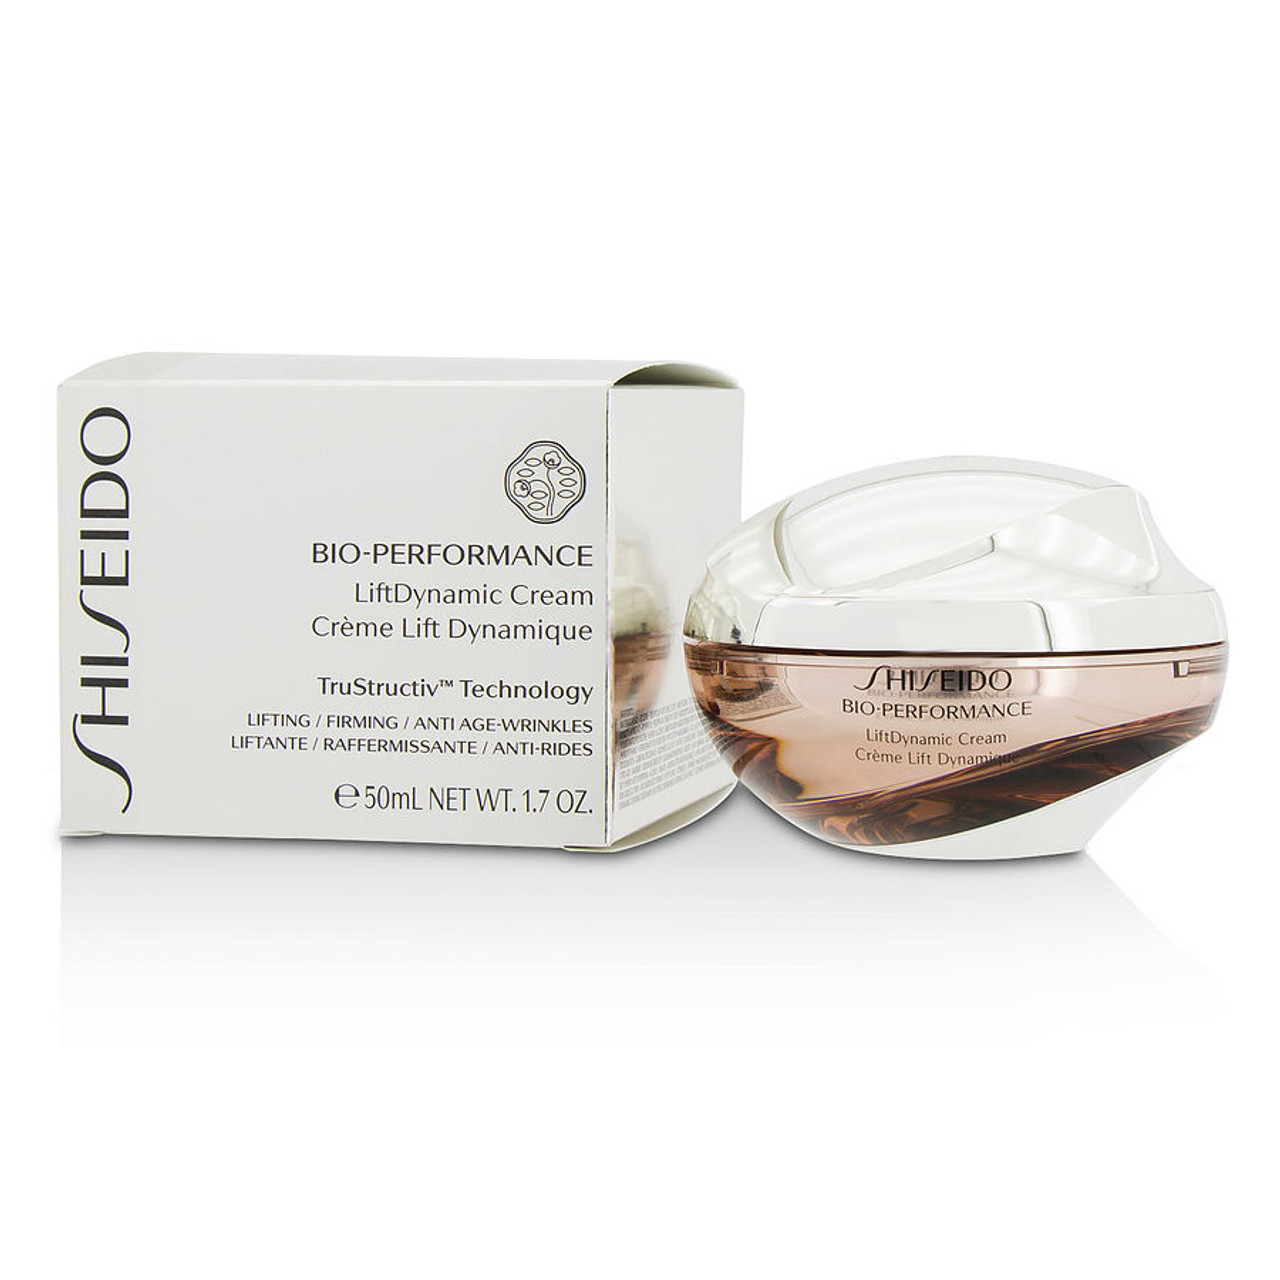 Shiseido Bio Performance Liftdynamic Cream - 1.7oz  (50ml)